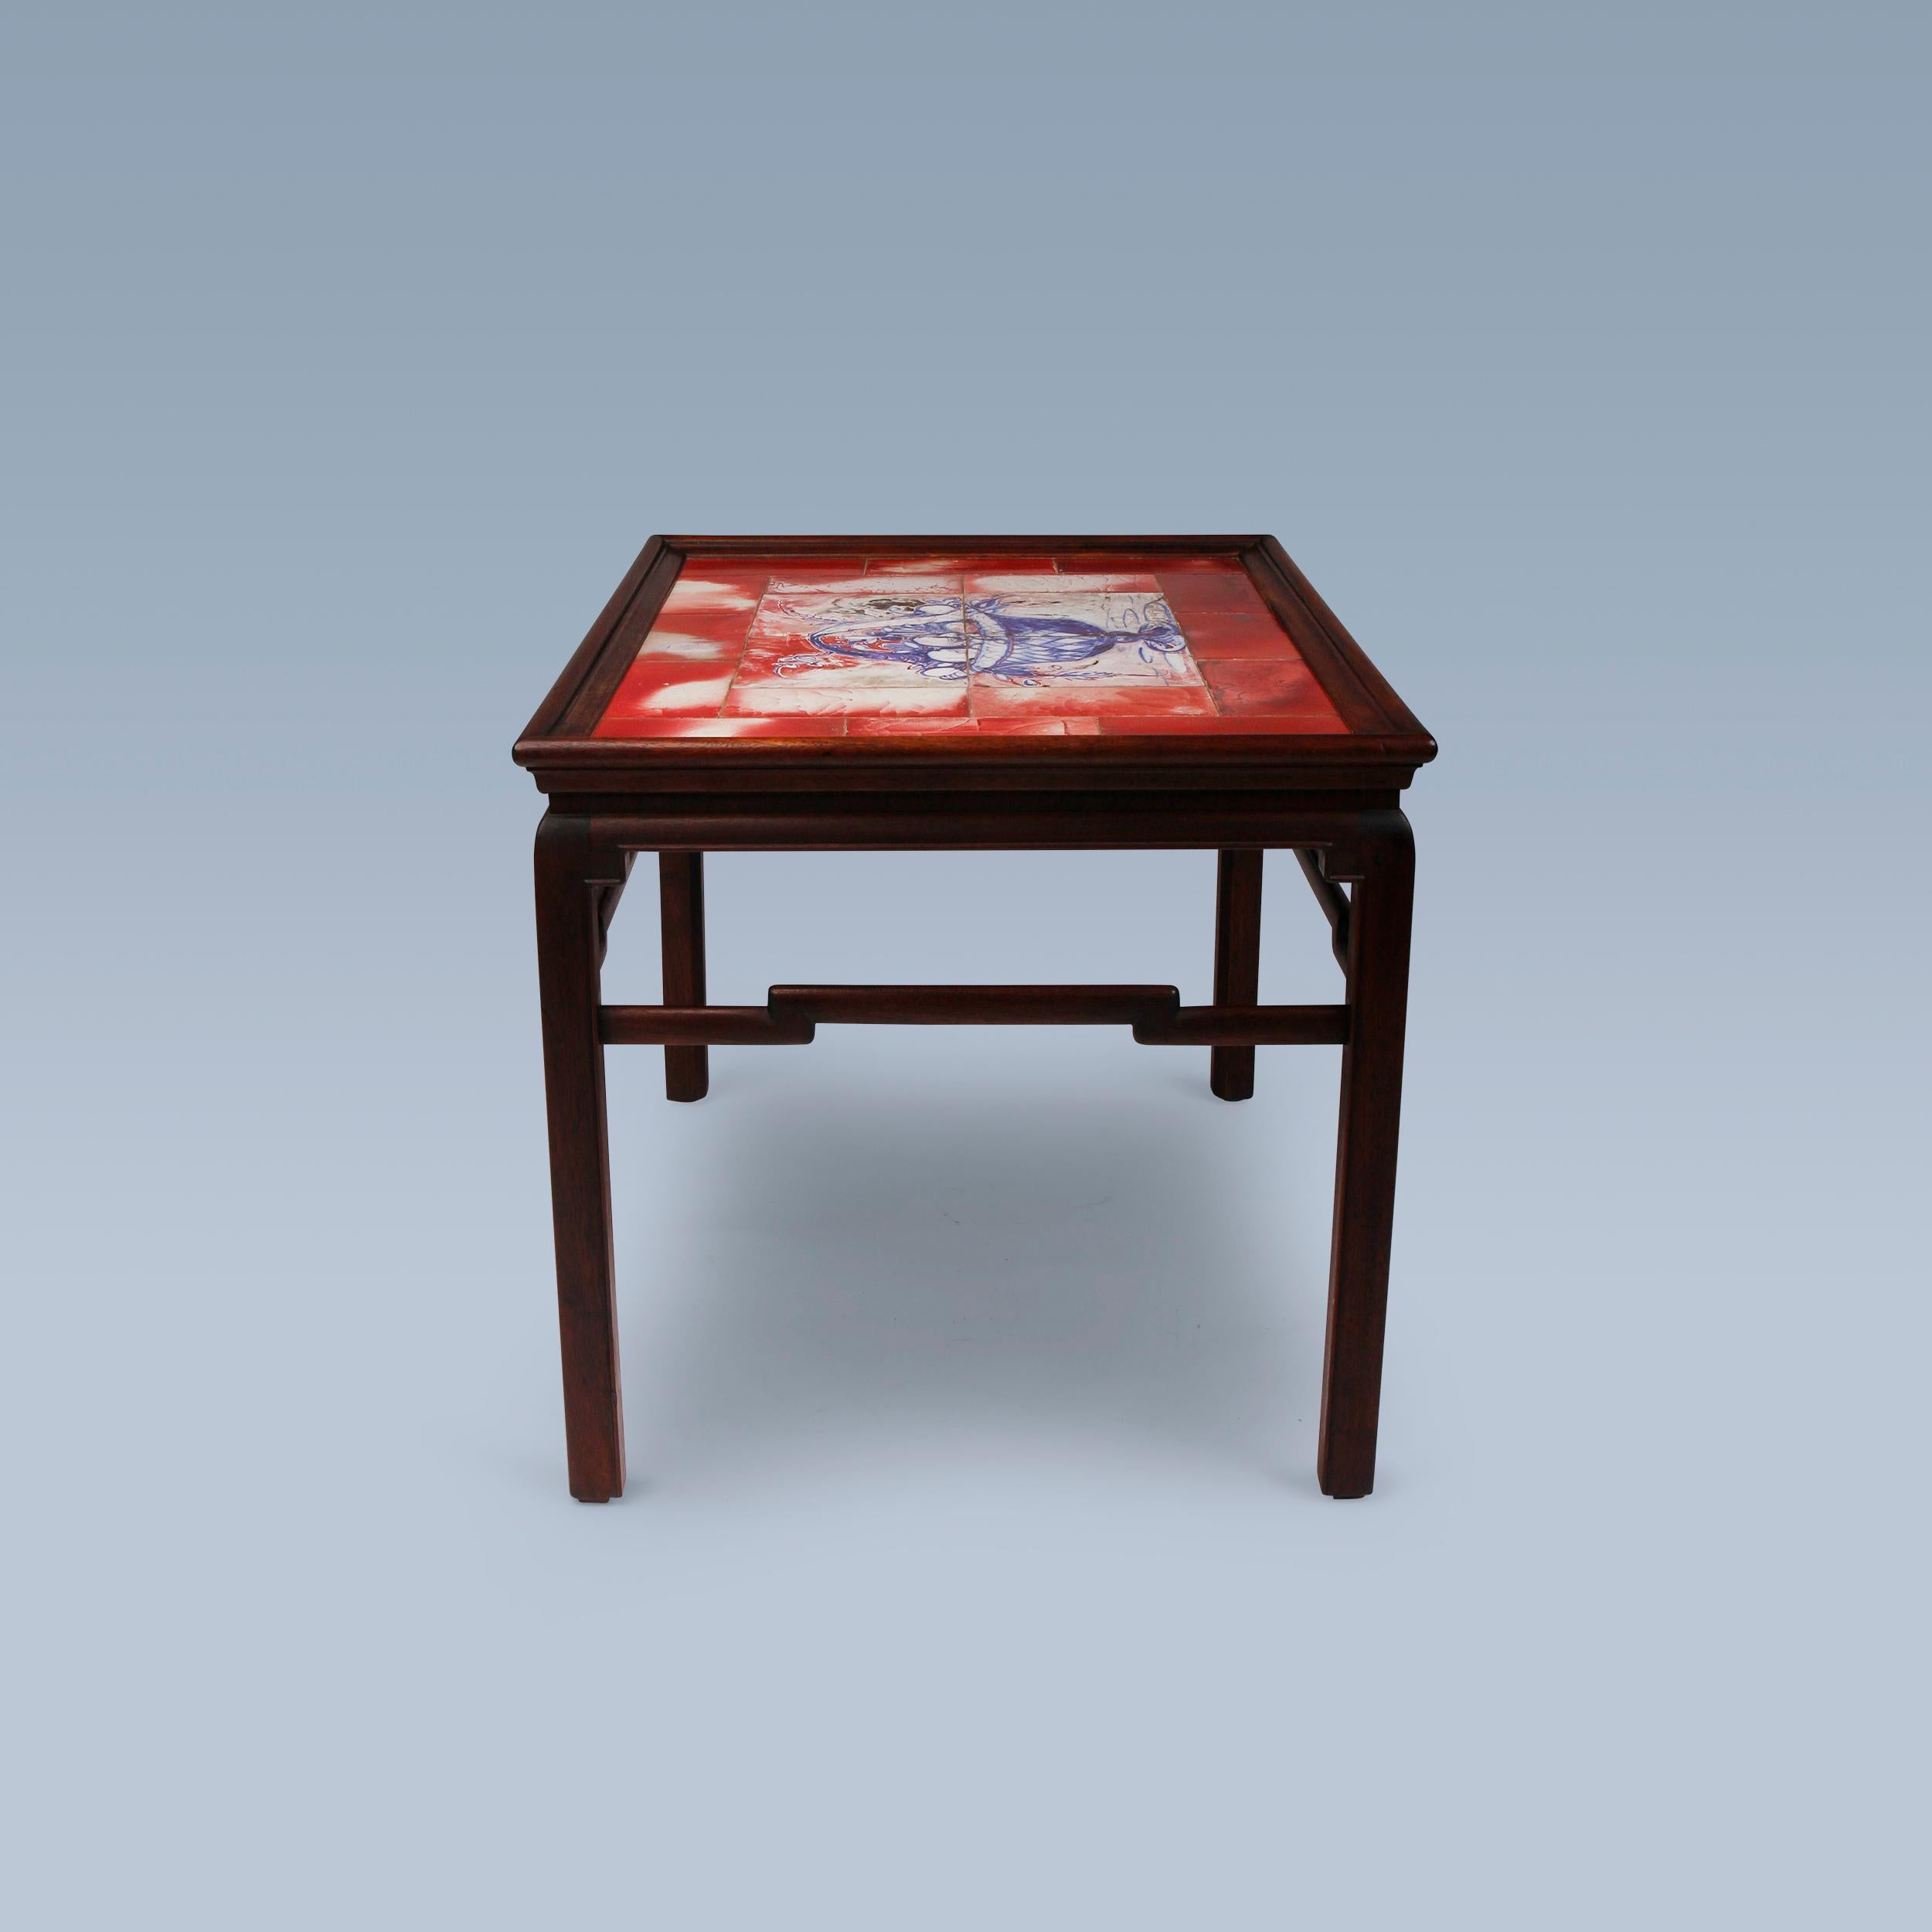 Cette table basse en acajou dit chinois a été réalisée par l'ébéniste Frits Henningsen vers les années 1930.

Il est surmonté de carreaux uniques incrustés représentant une corbeille de fruits avec des fleurs décoratives. Les carreaux sont colorés à